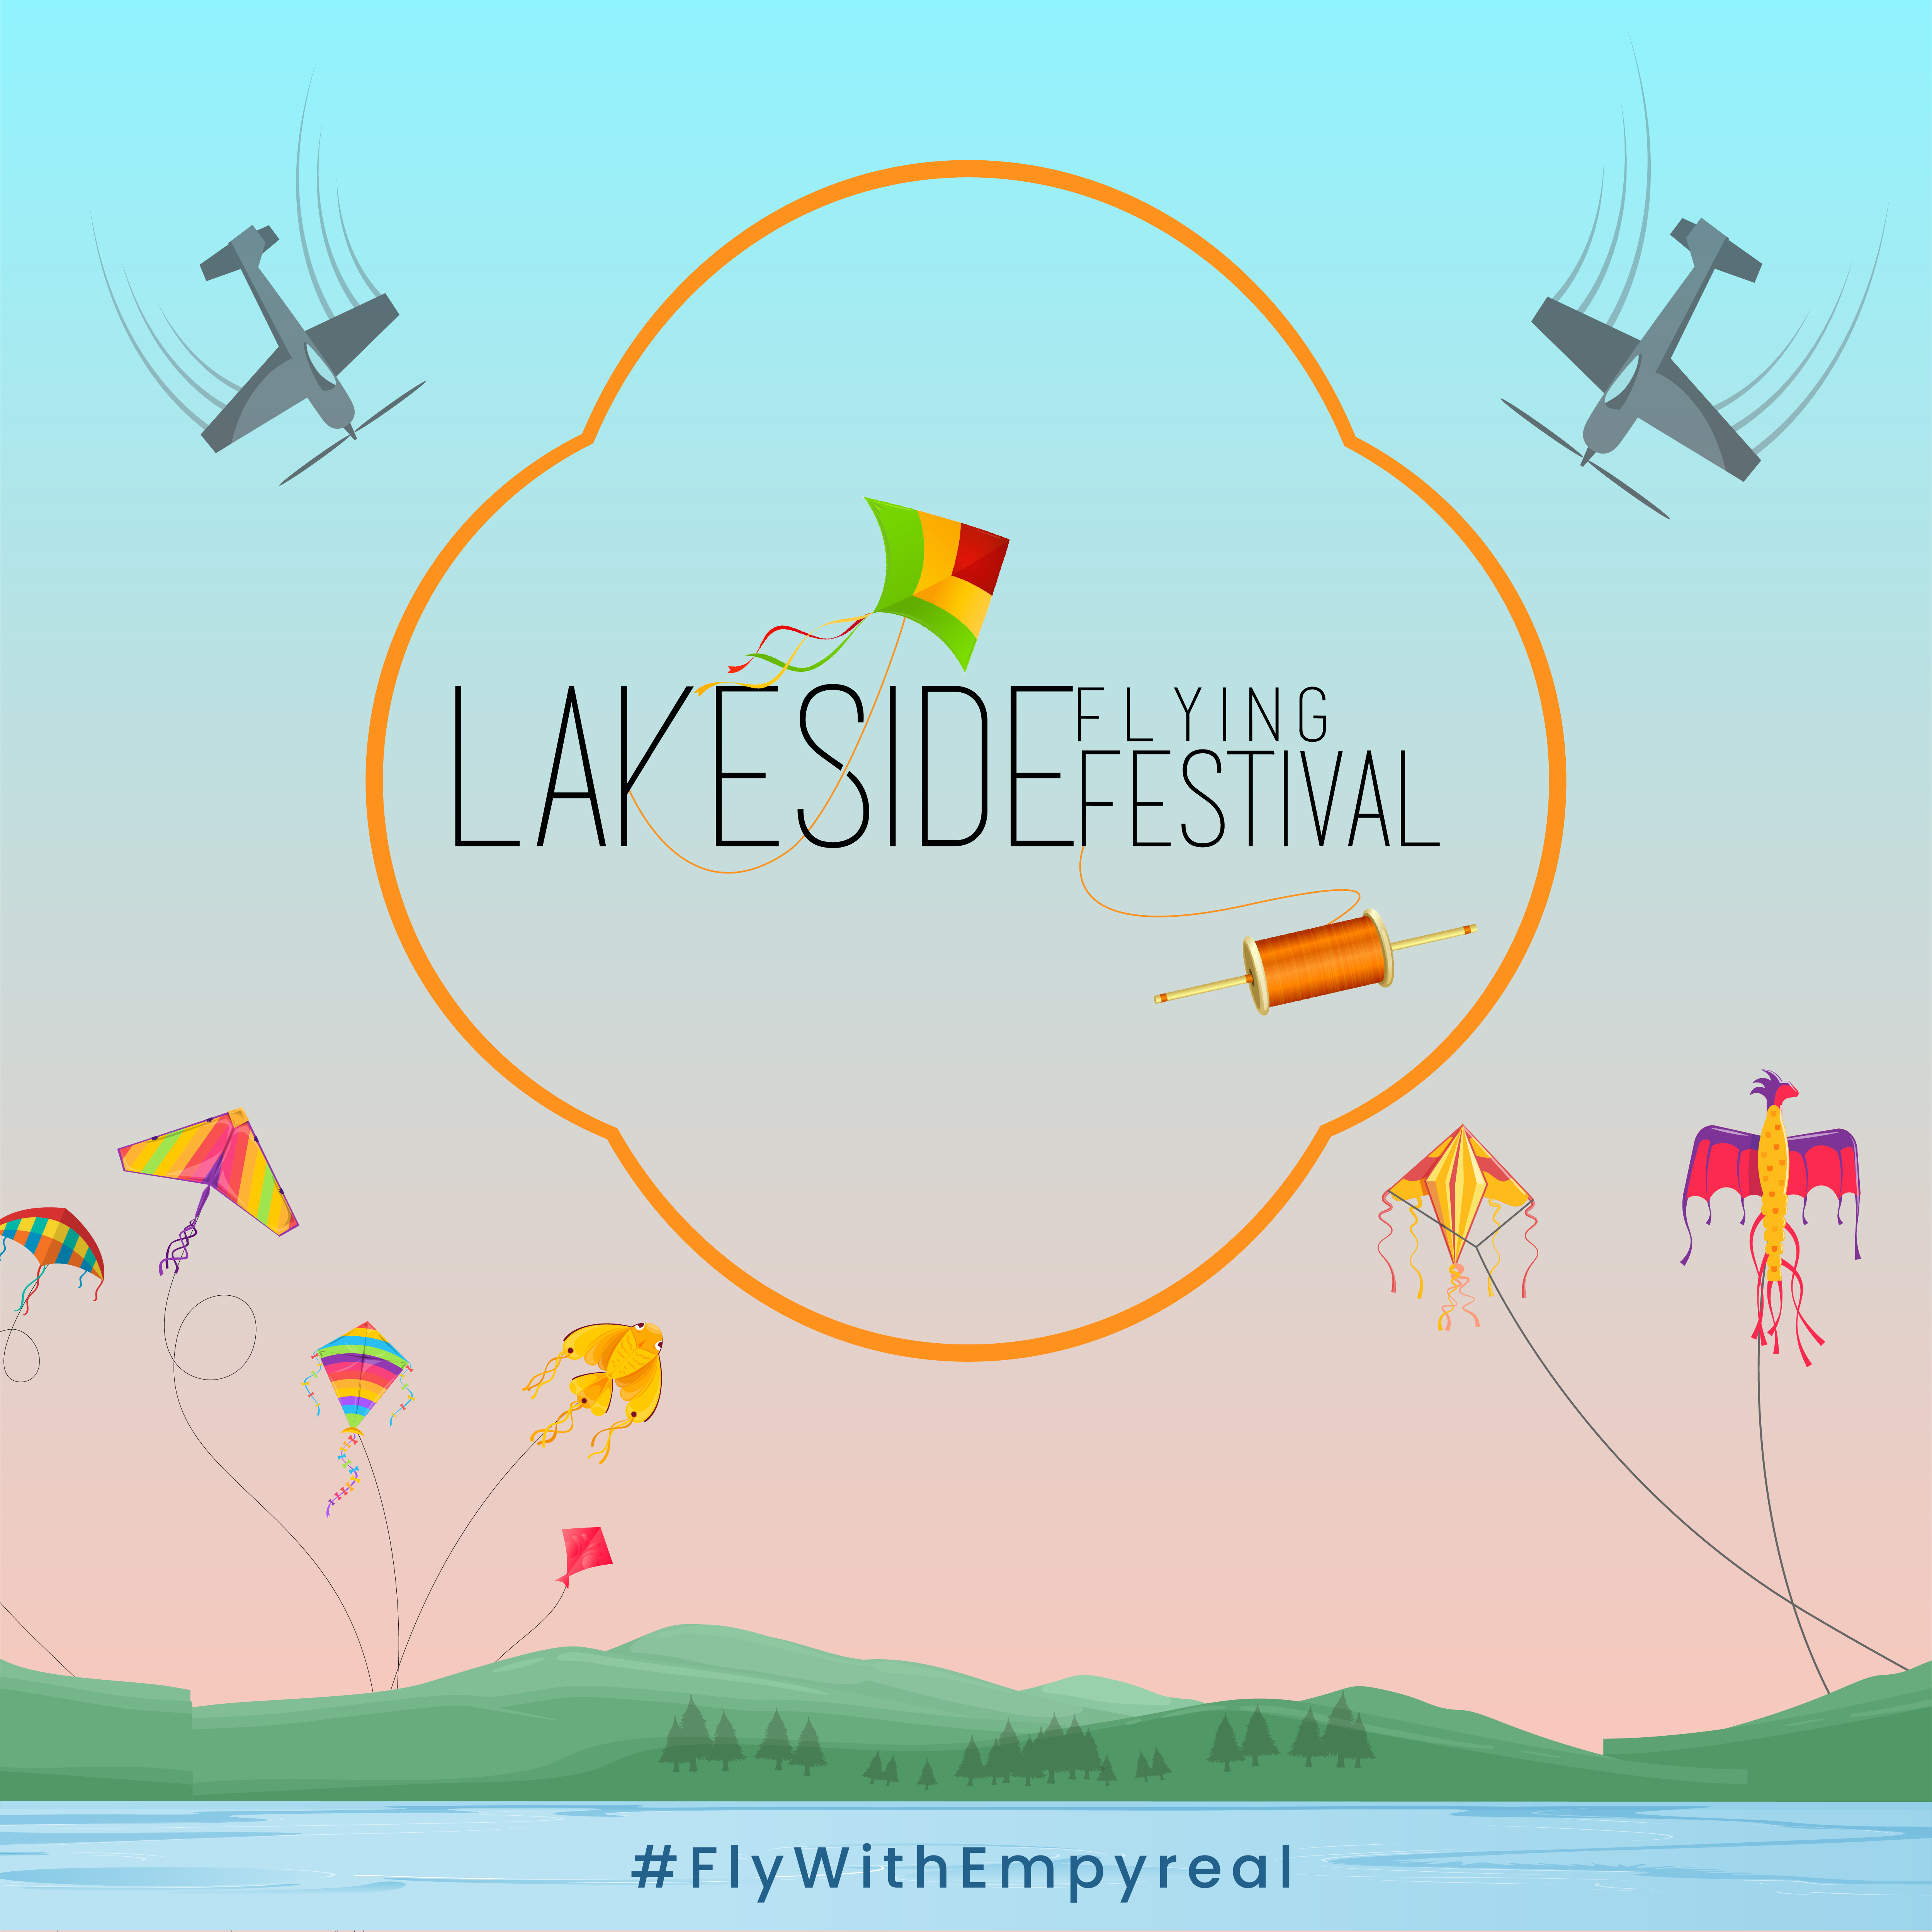 Lake-side Flying Festival